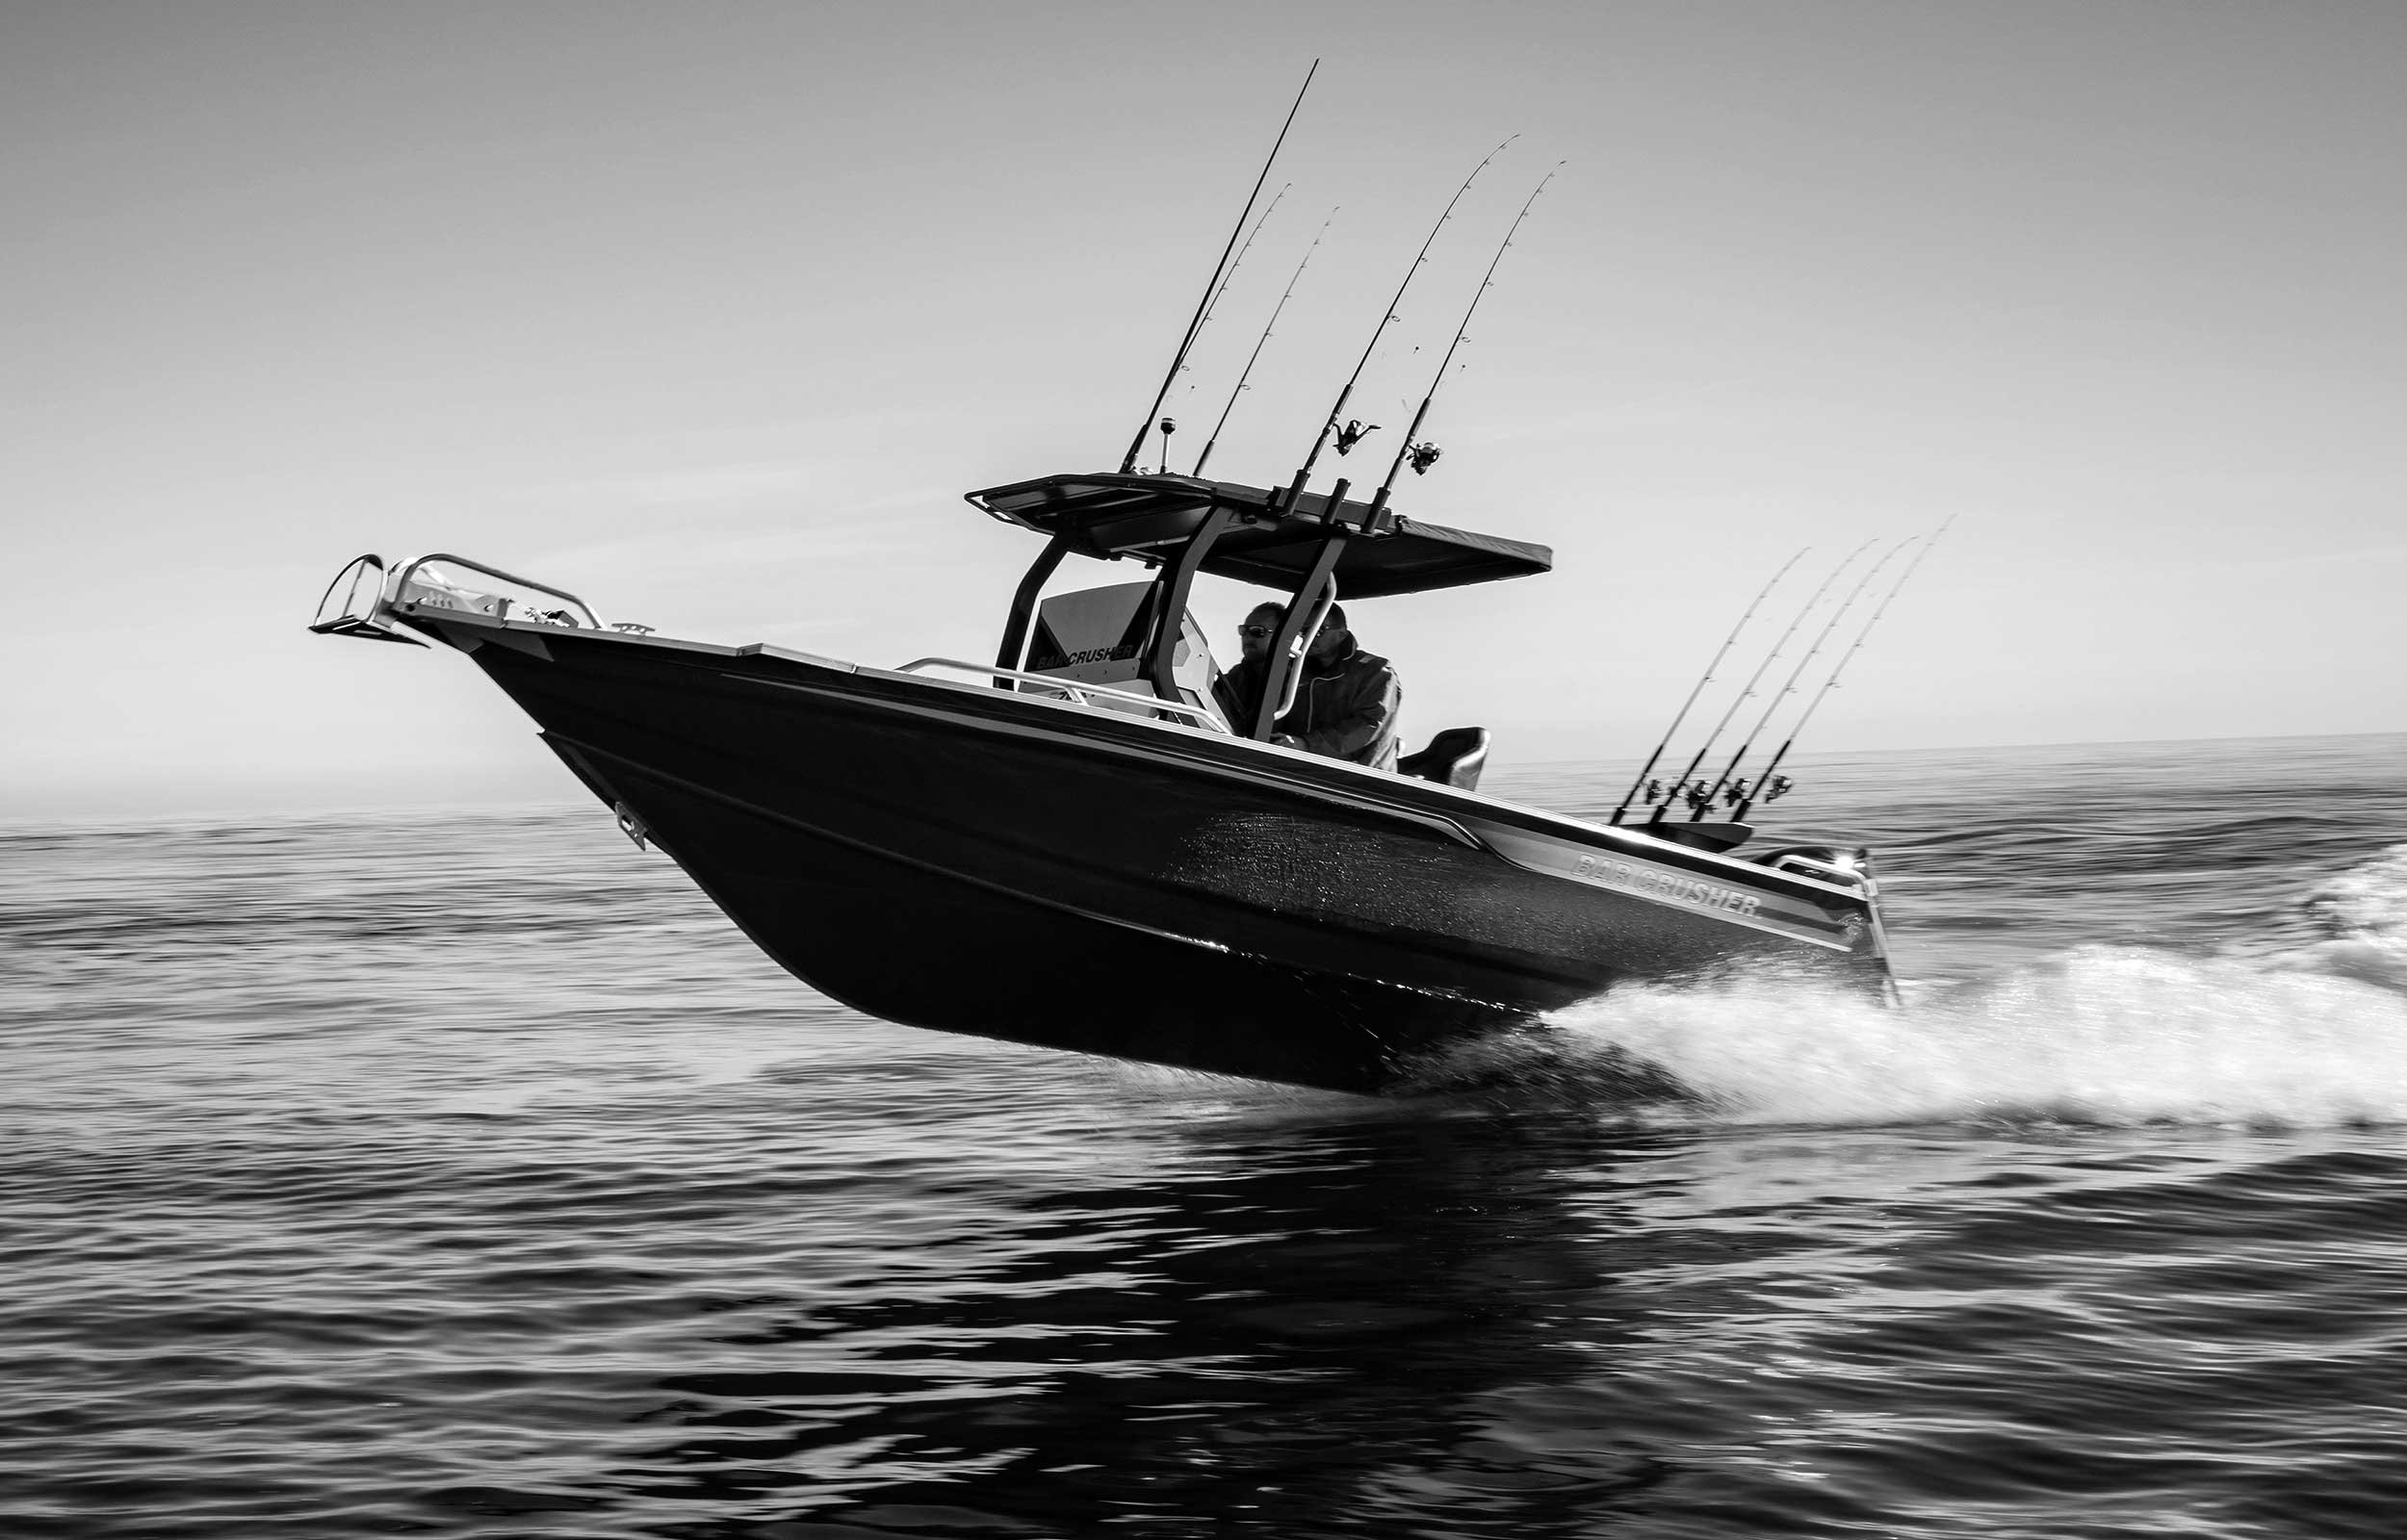 models-bar-crusher-730xt-plate-aluminium-fishing-boat-2019-web-1